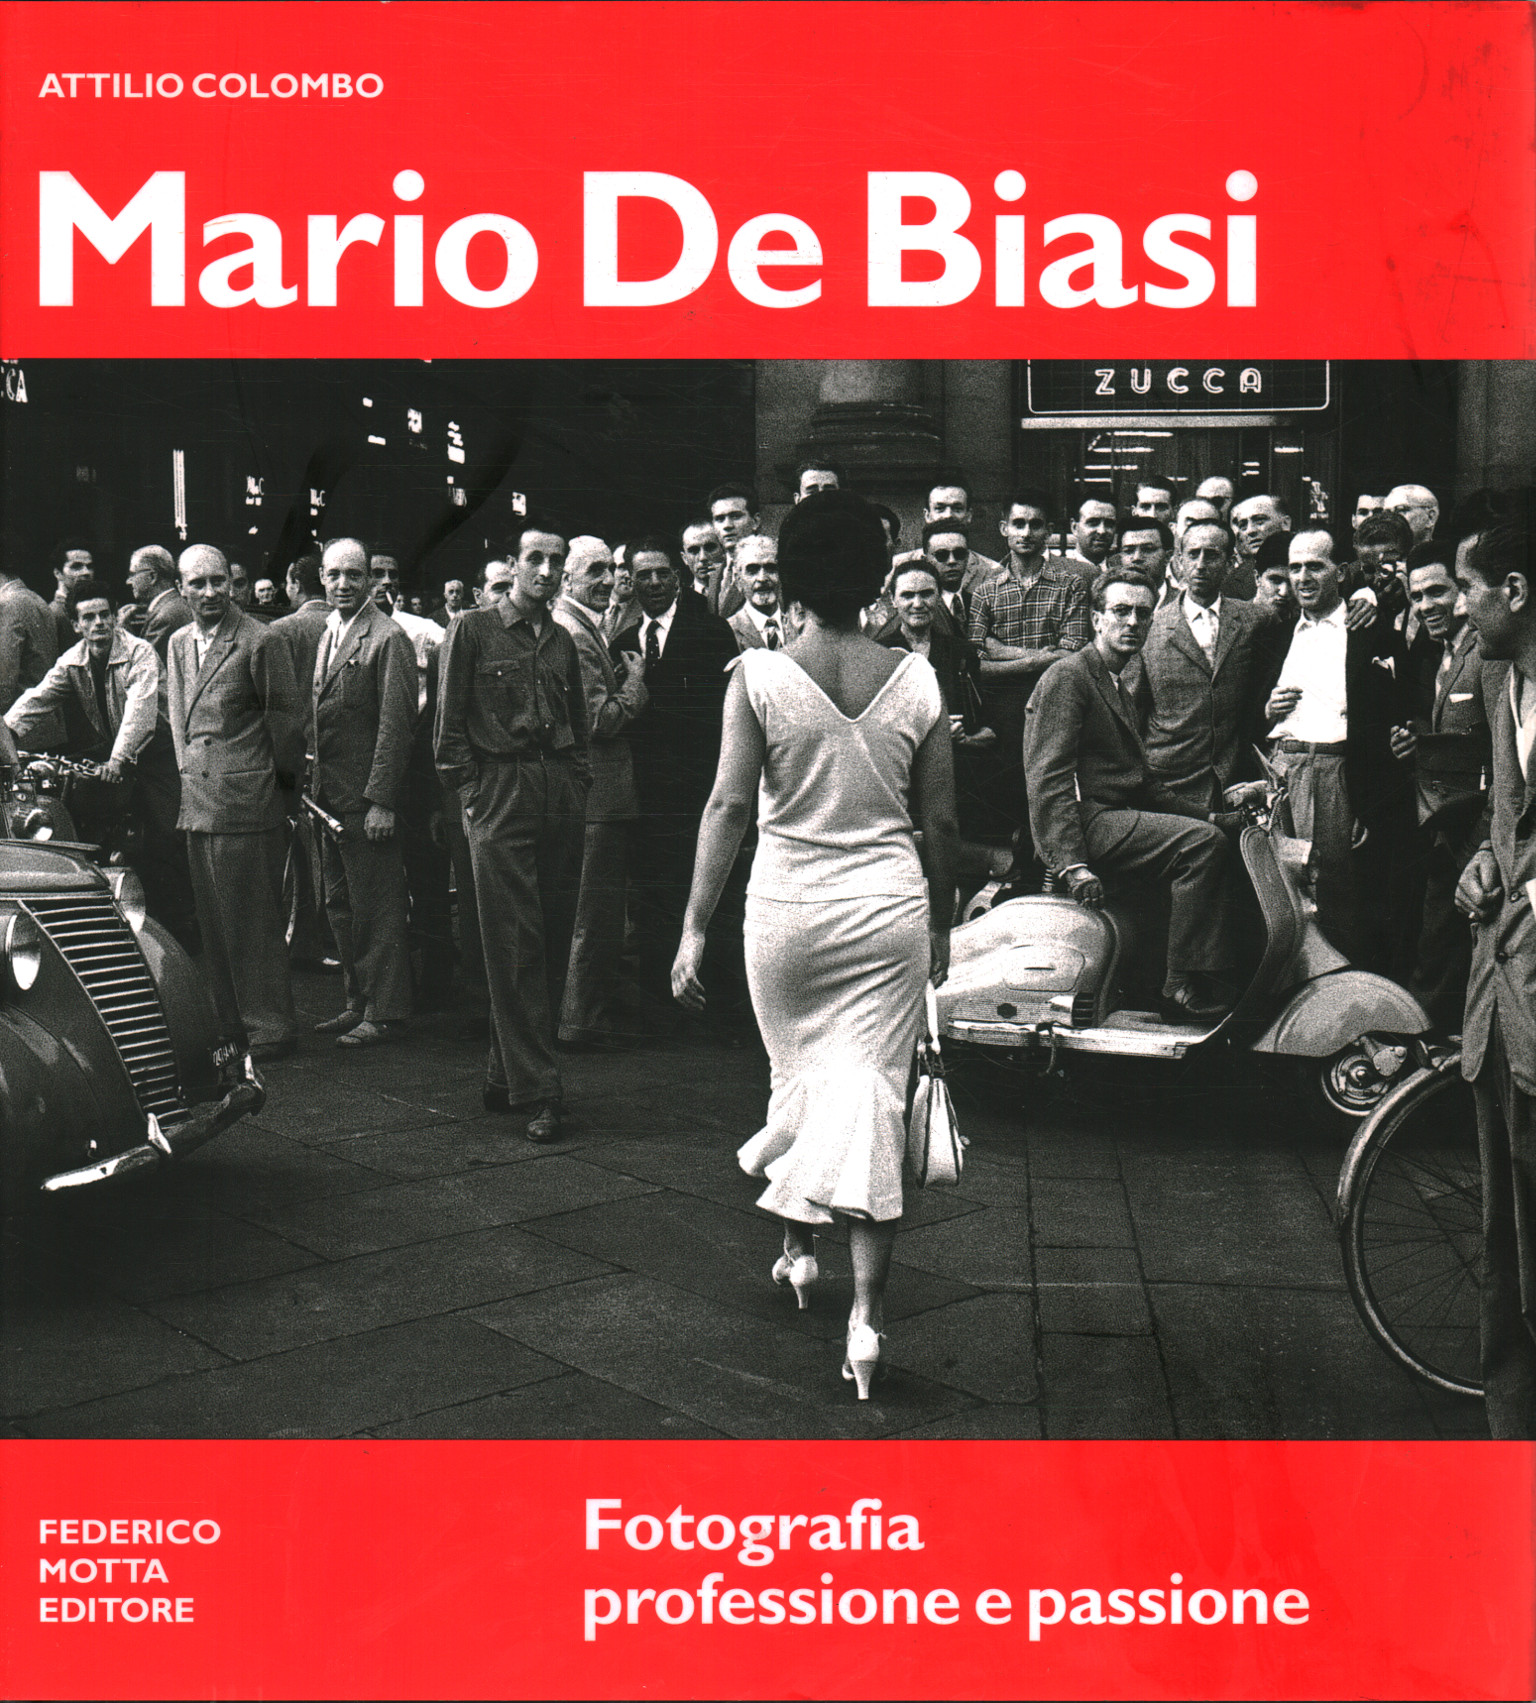 Mario De Biasi. Métier de la photographie et